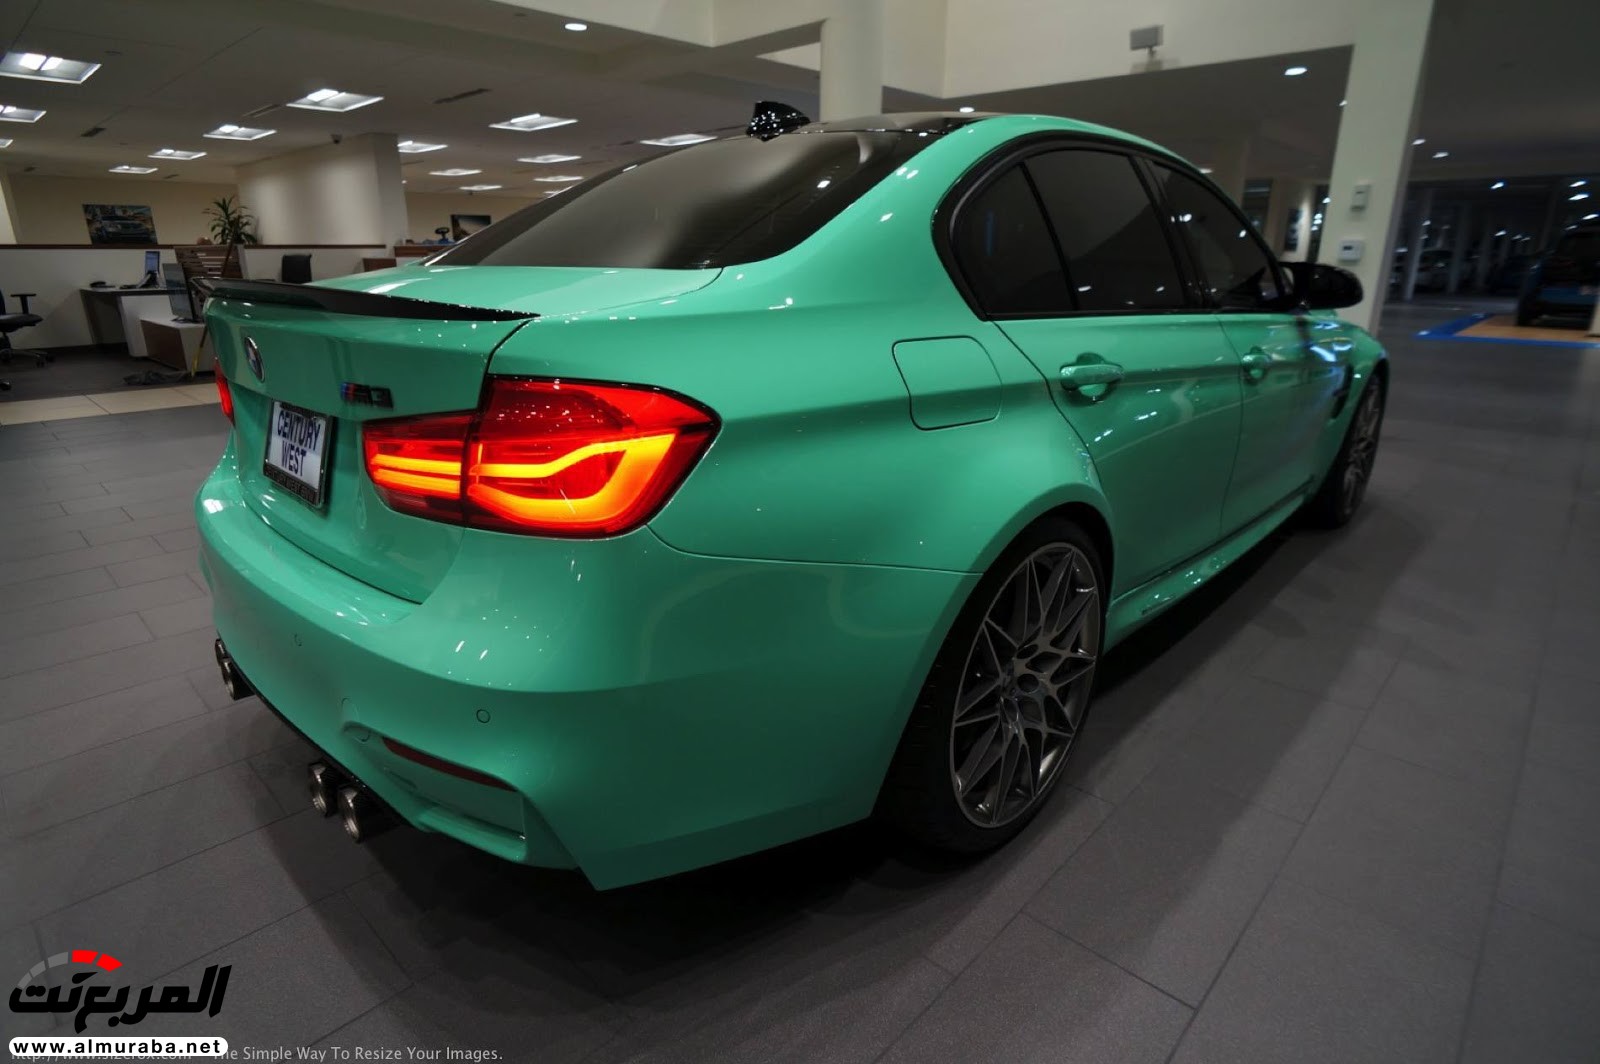 "بالصور" شاهد "بي إم دبليو" F80 M3 الخاصة بطلاء النعناع الأخضر BMW 99